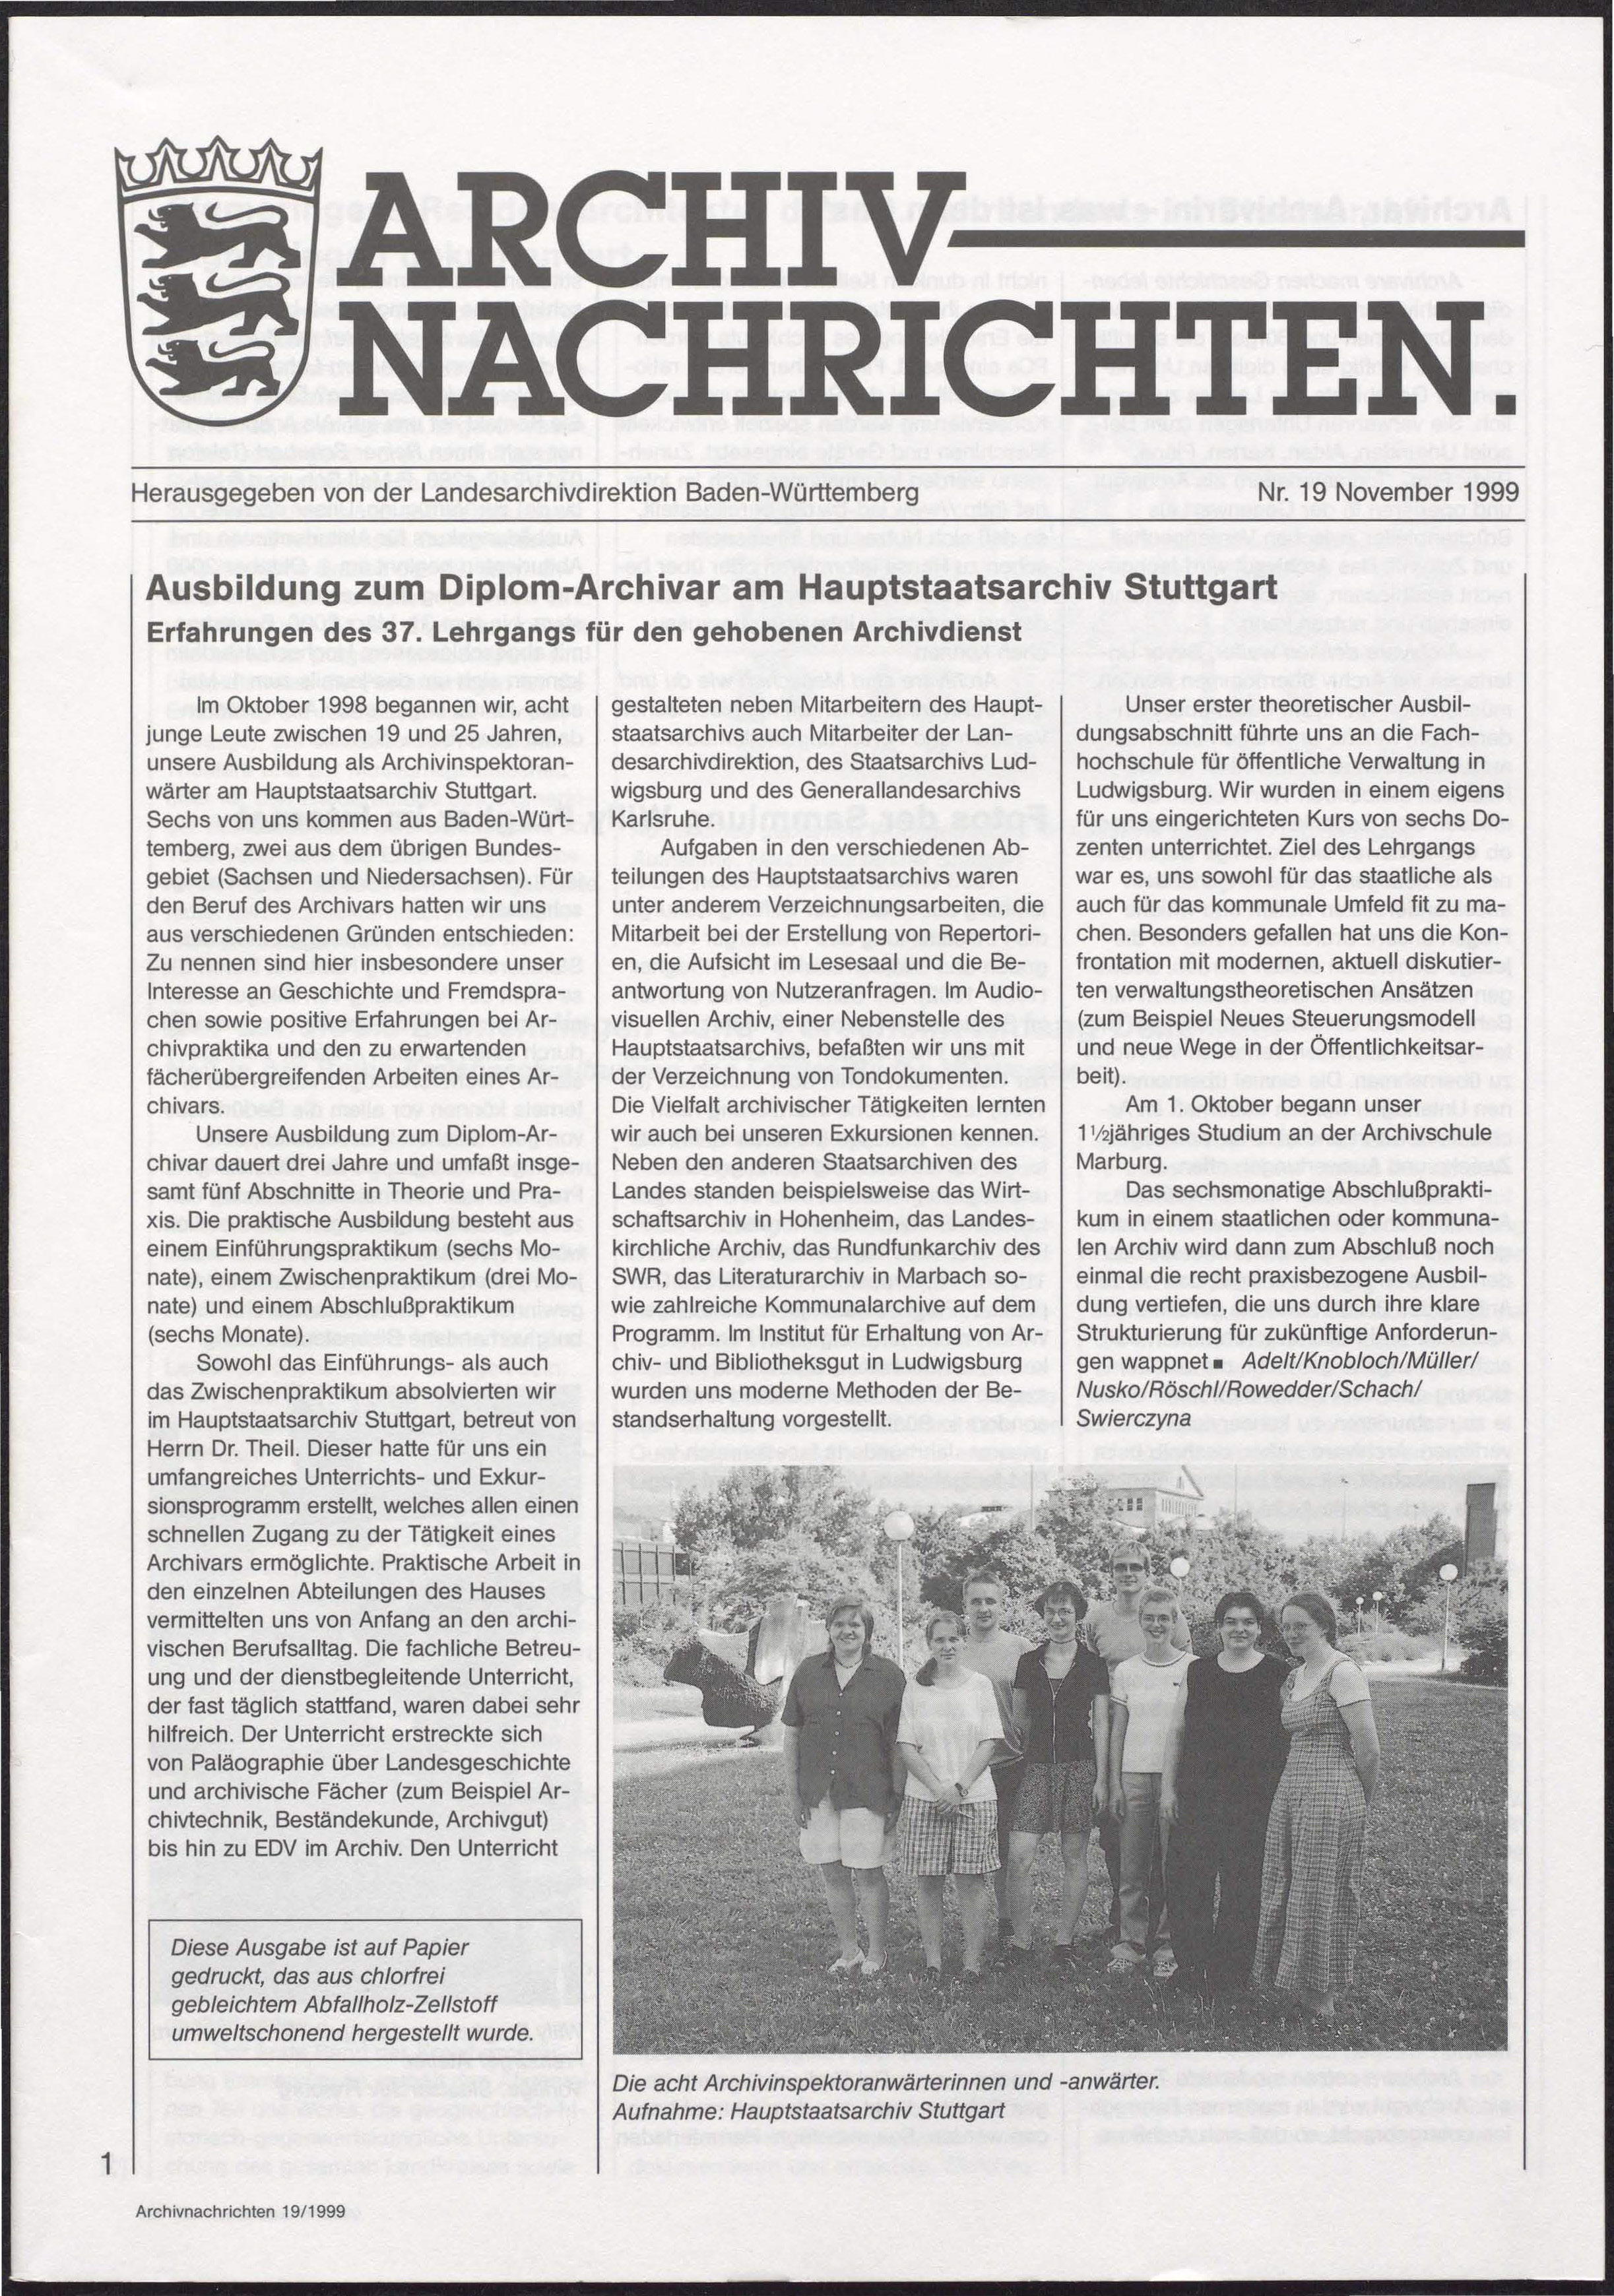                     Ansehen Nr. 19 (1999): Archivnachrichten
                